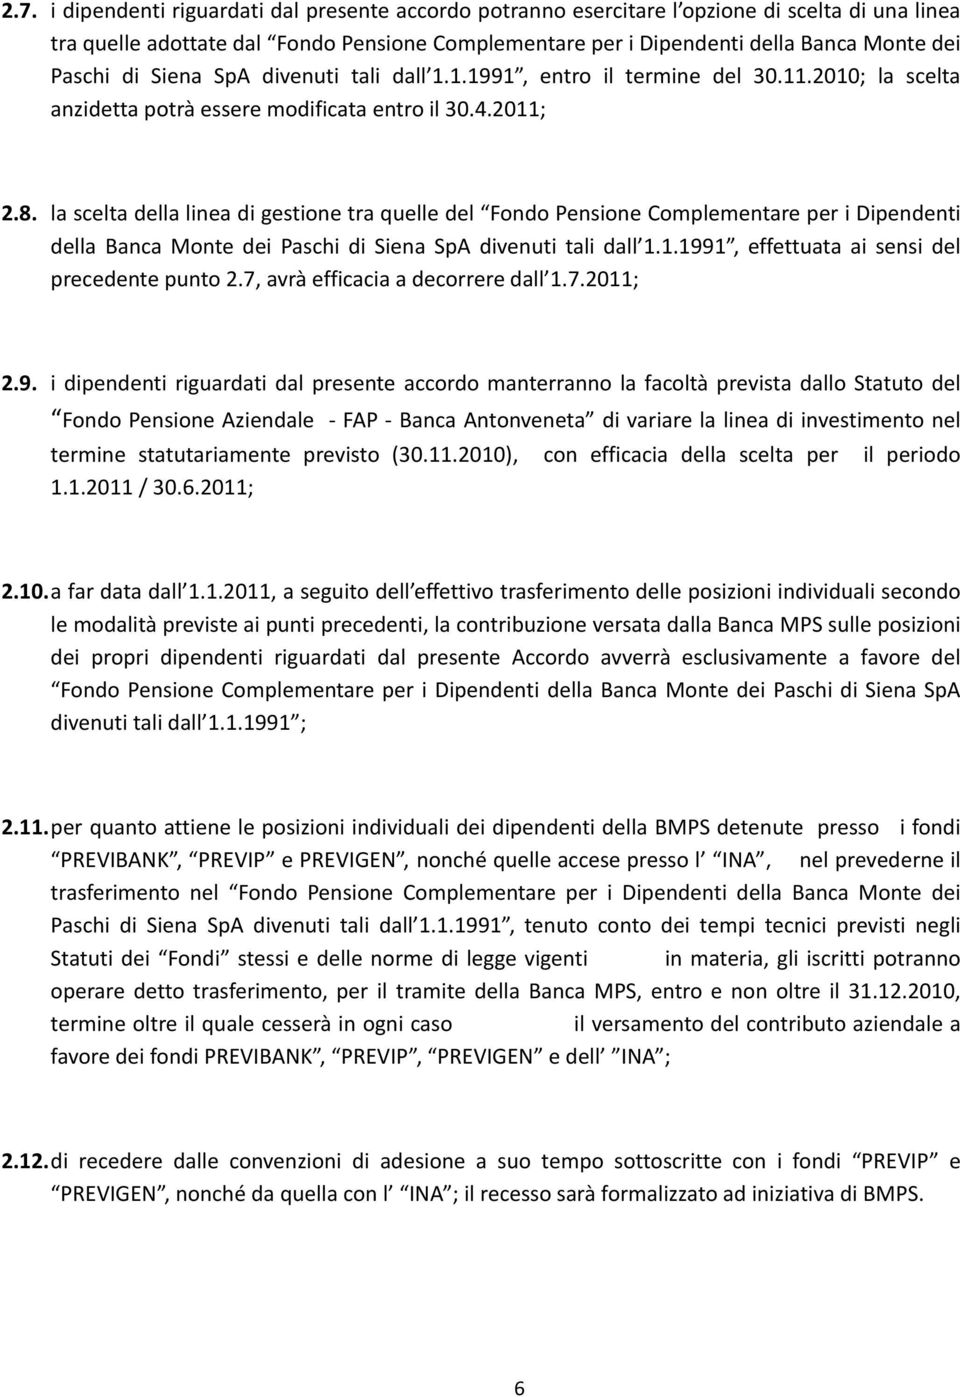 lasceltadellalineadigestionetraquelledel FondoPensioneComplementareperiDipendenti della Banca Monte dei Paschi di Siena SpA divenuti tali dall 1.1.1991, effettuata ai sensi del precedentepunto2.